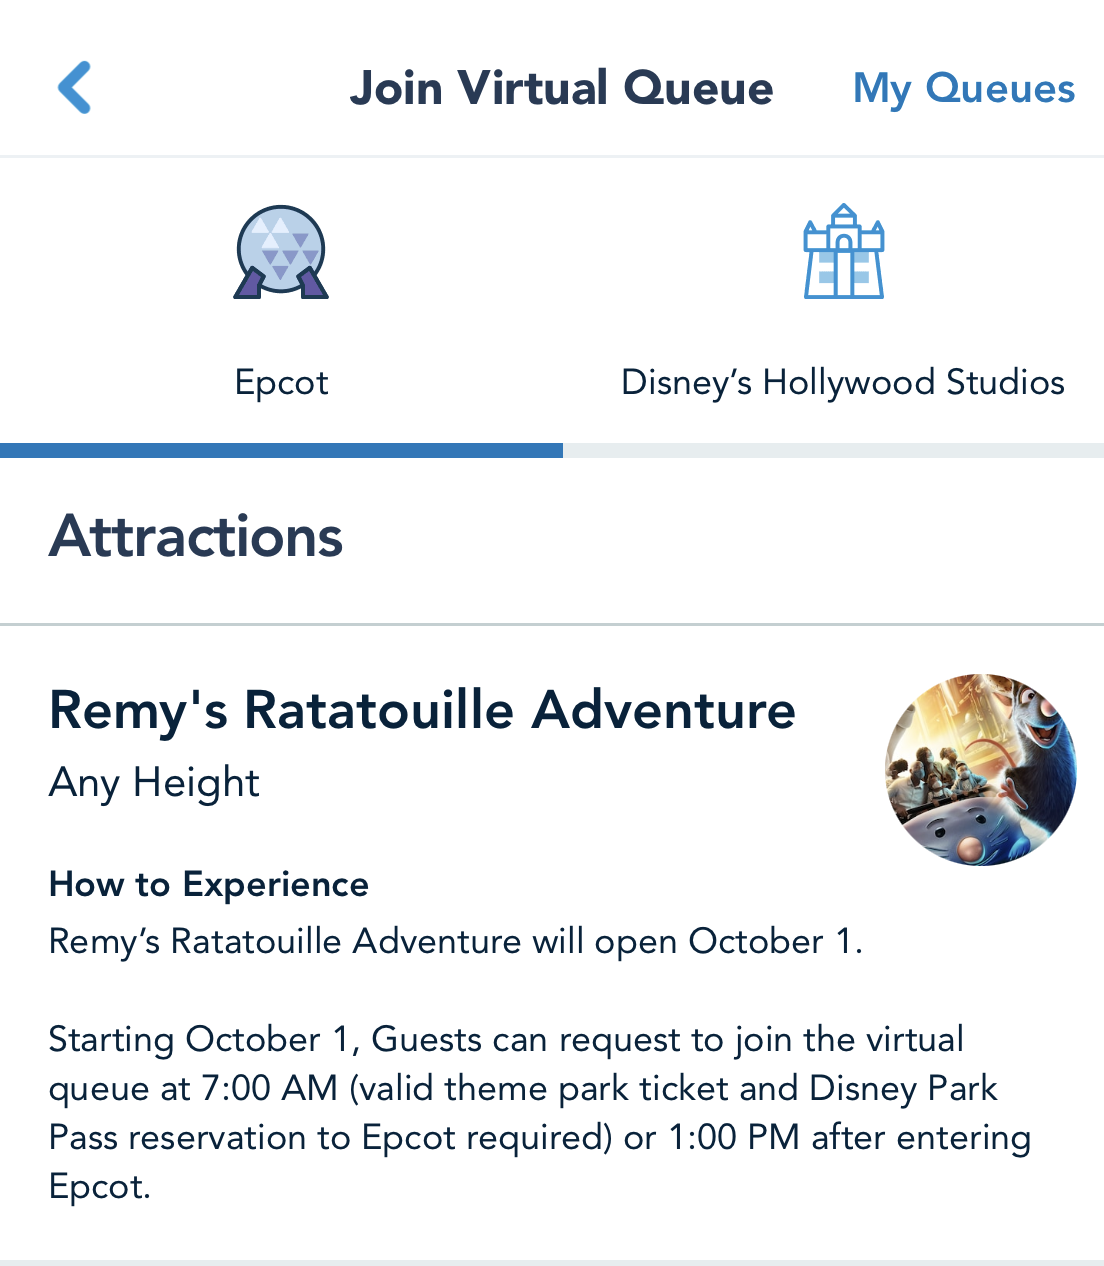 Remy's Ratatouille Adventure virtual queue